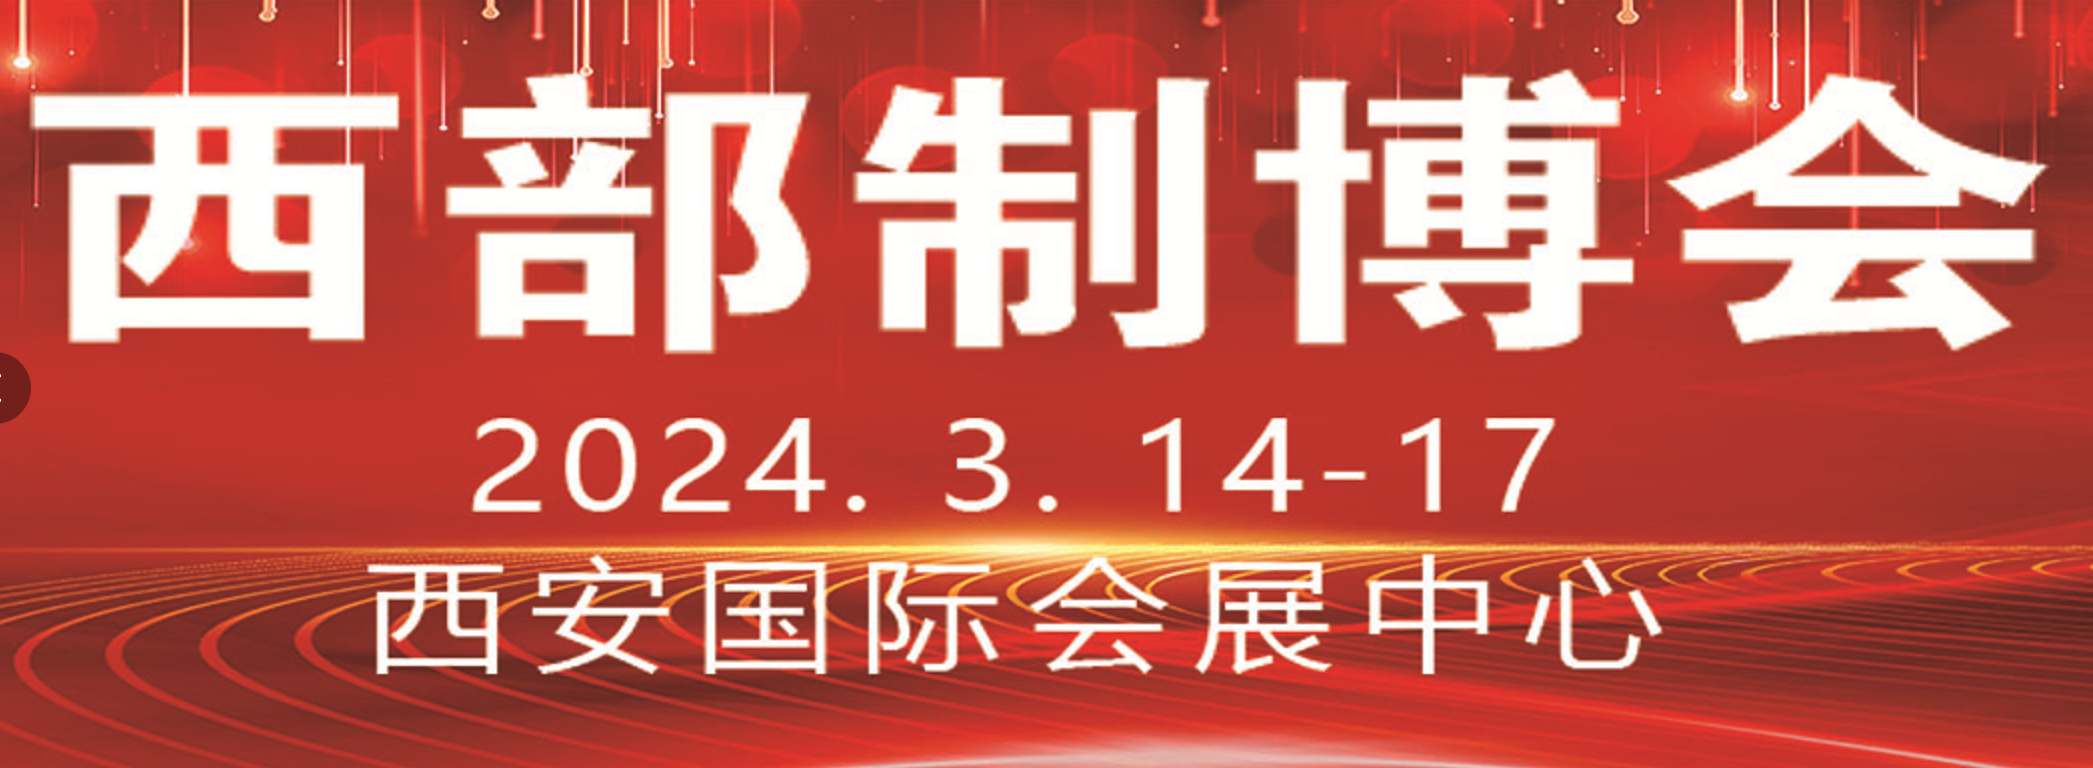 2024第28届中国国际军民两用技术及国防电子信息博览会